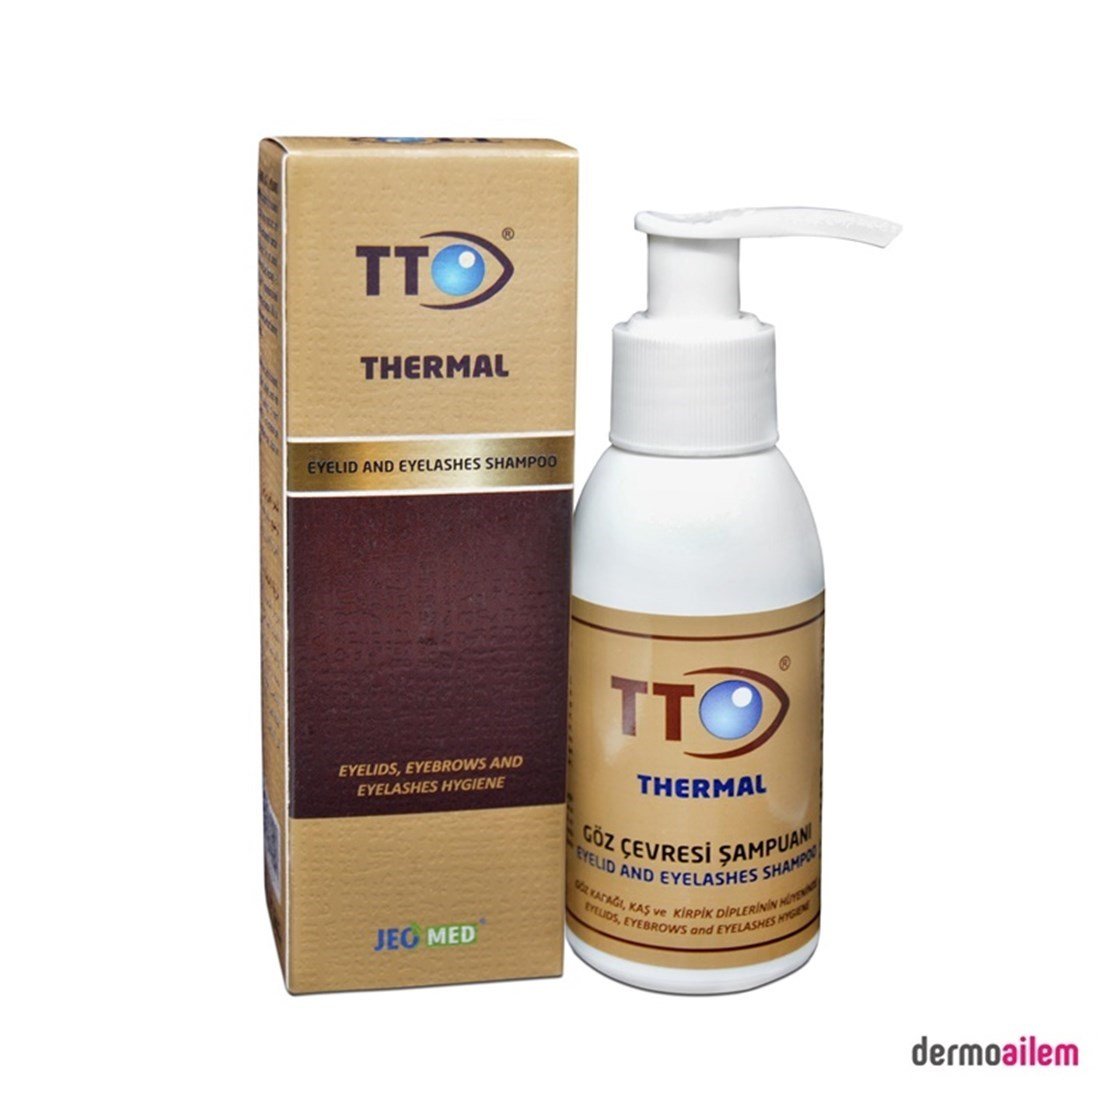 TTO Thermal Göz Çevresi Şampuanı 100 ml Fiyatları İndirimli | Dermoailem.com